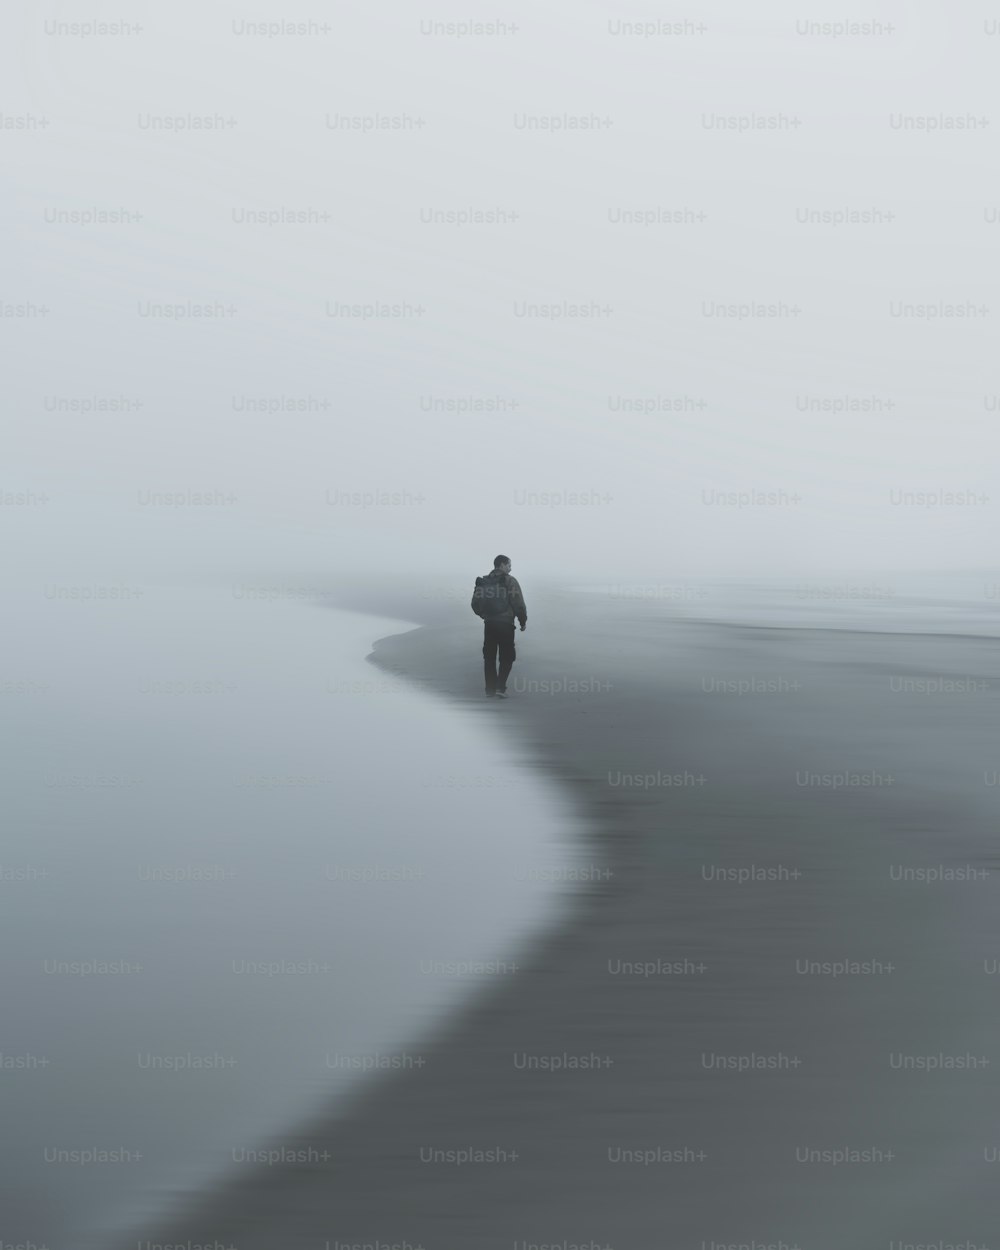 안개 속에서 해변을 걷고 있는 사람